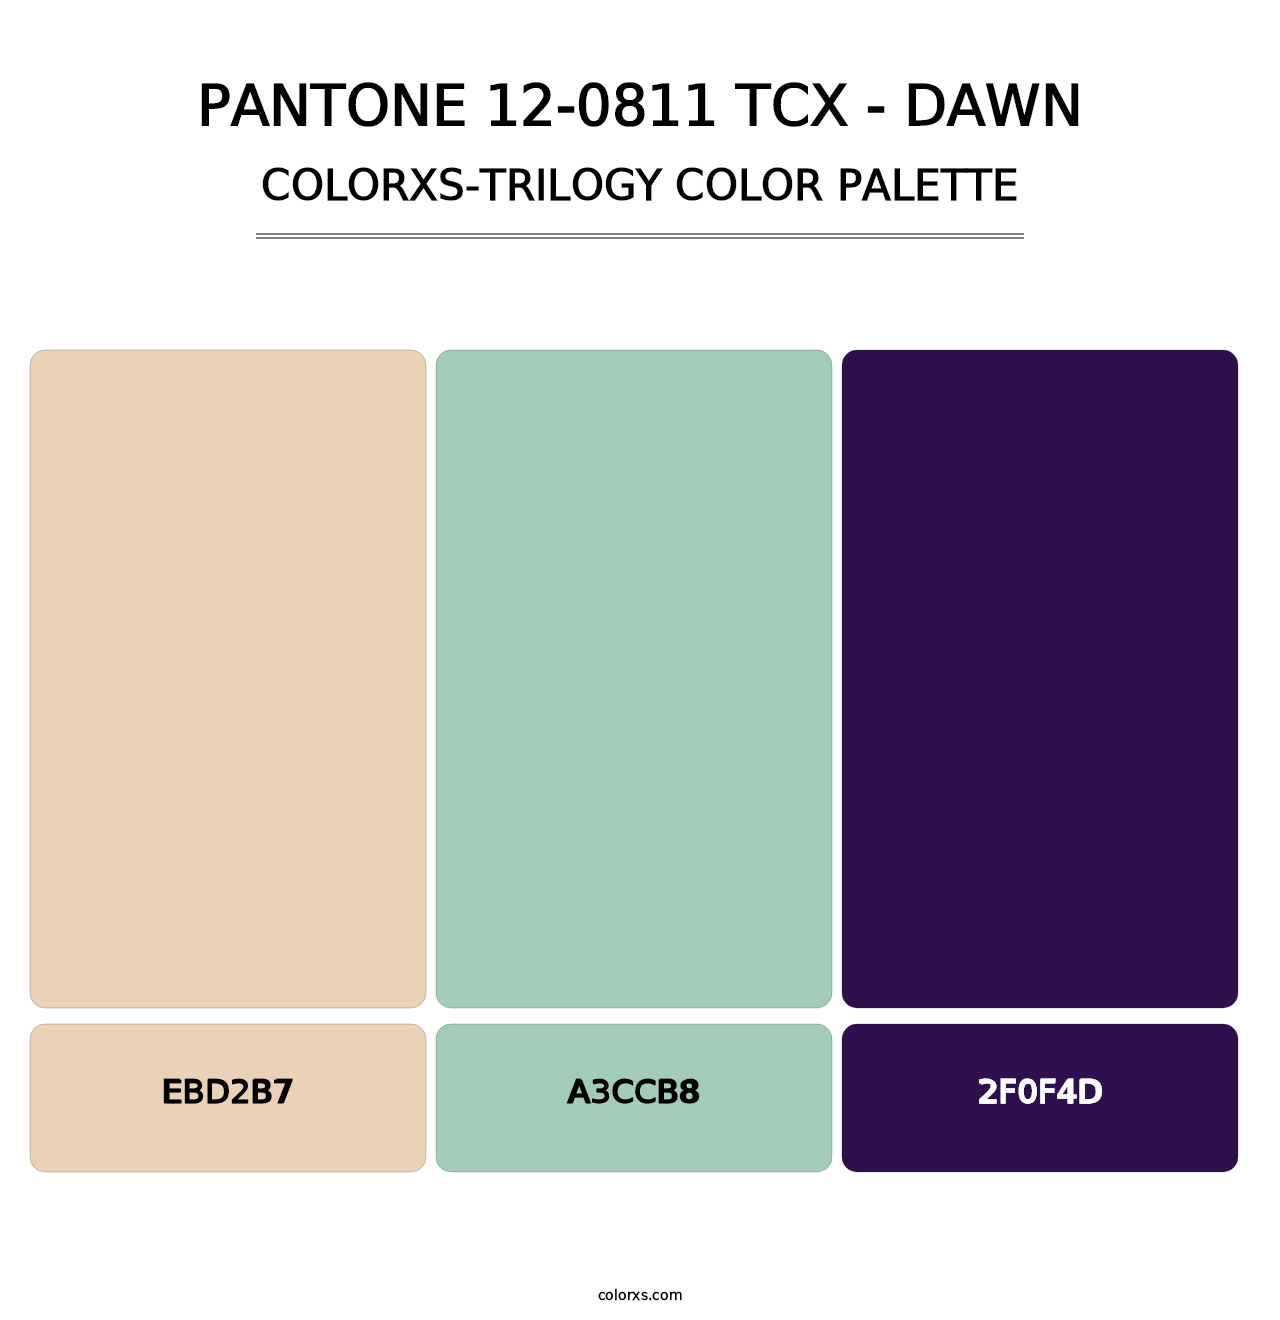 PANTONE 12-0811 TCX - Dawn - Colorxs Trilogy Palette